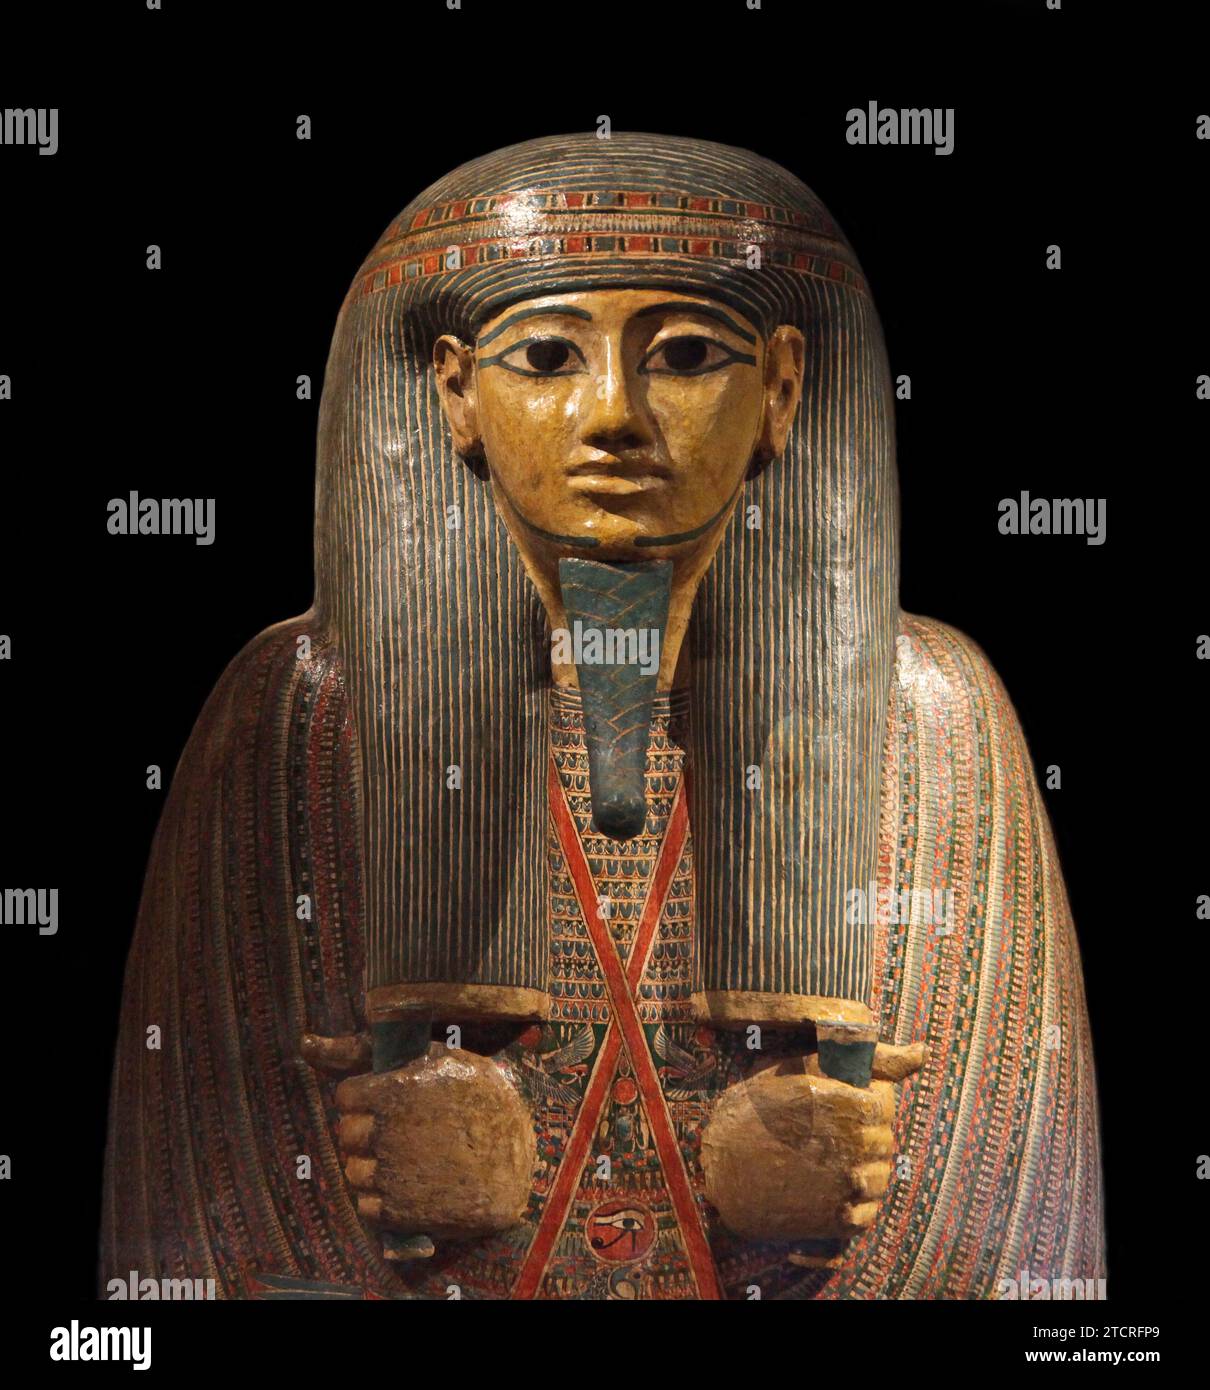 Innensarg von Djedmontefanch. Ein Amun-Priester. Wunderschön bemalt. Holz. Theben Ägypten. 22. Dynastie (ca. 950-900 v. Chr.) Stockfoto